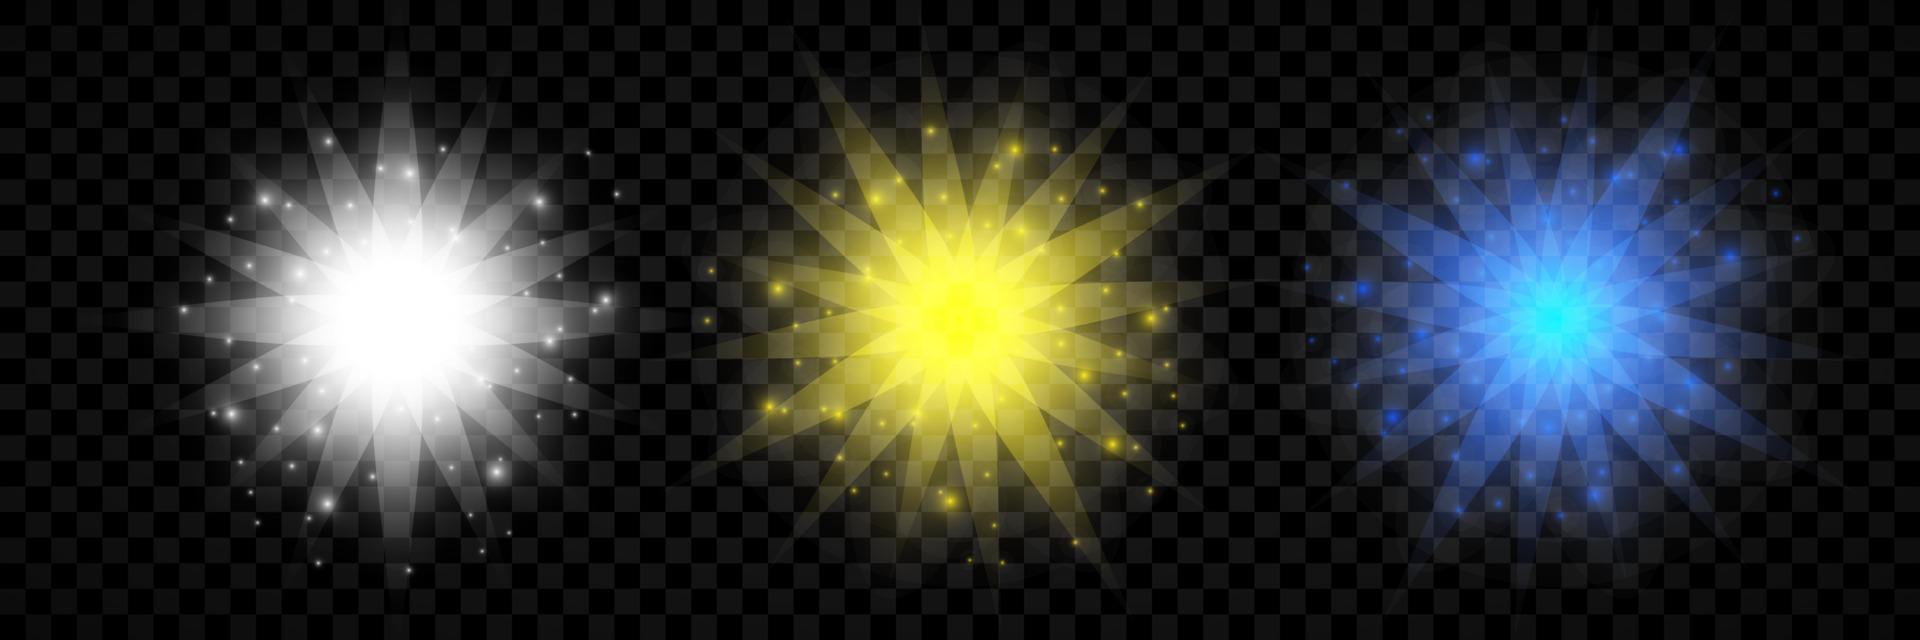 effet de lumière des fusées éclairantes. ensemble de trois effets de starburst de lumières rougeoyantes blanches, jaunes et bleues avec des étincelles vecteur